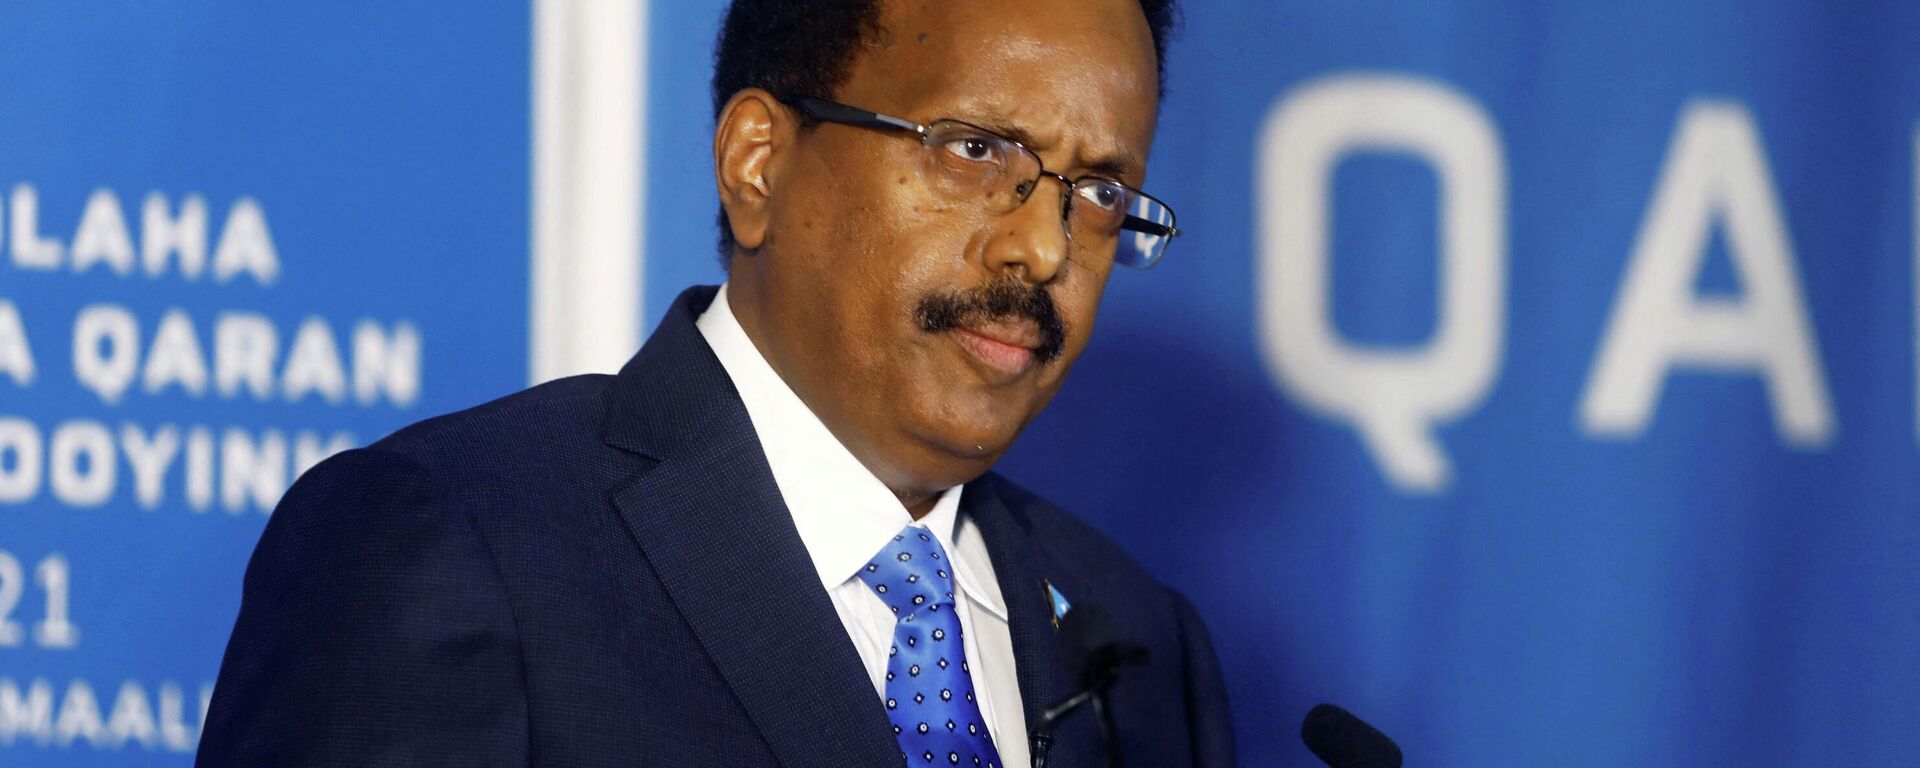 Mohamed Abdullahi Mohamed, ou Farmaajo, fala com delegados durante negociação eleitoral em Mogadishu, Somália, 27 de maio de 2021 - Sputnik Brasil, 1920, 29.12.2021